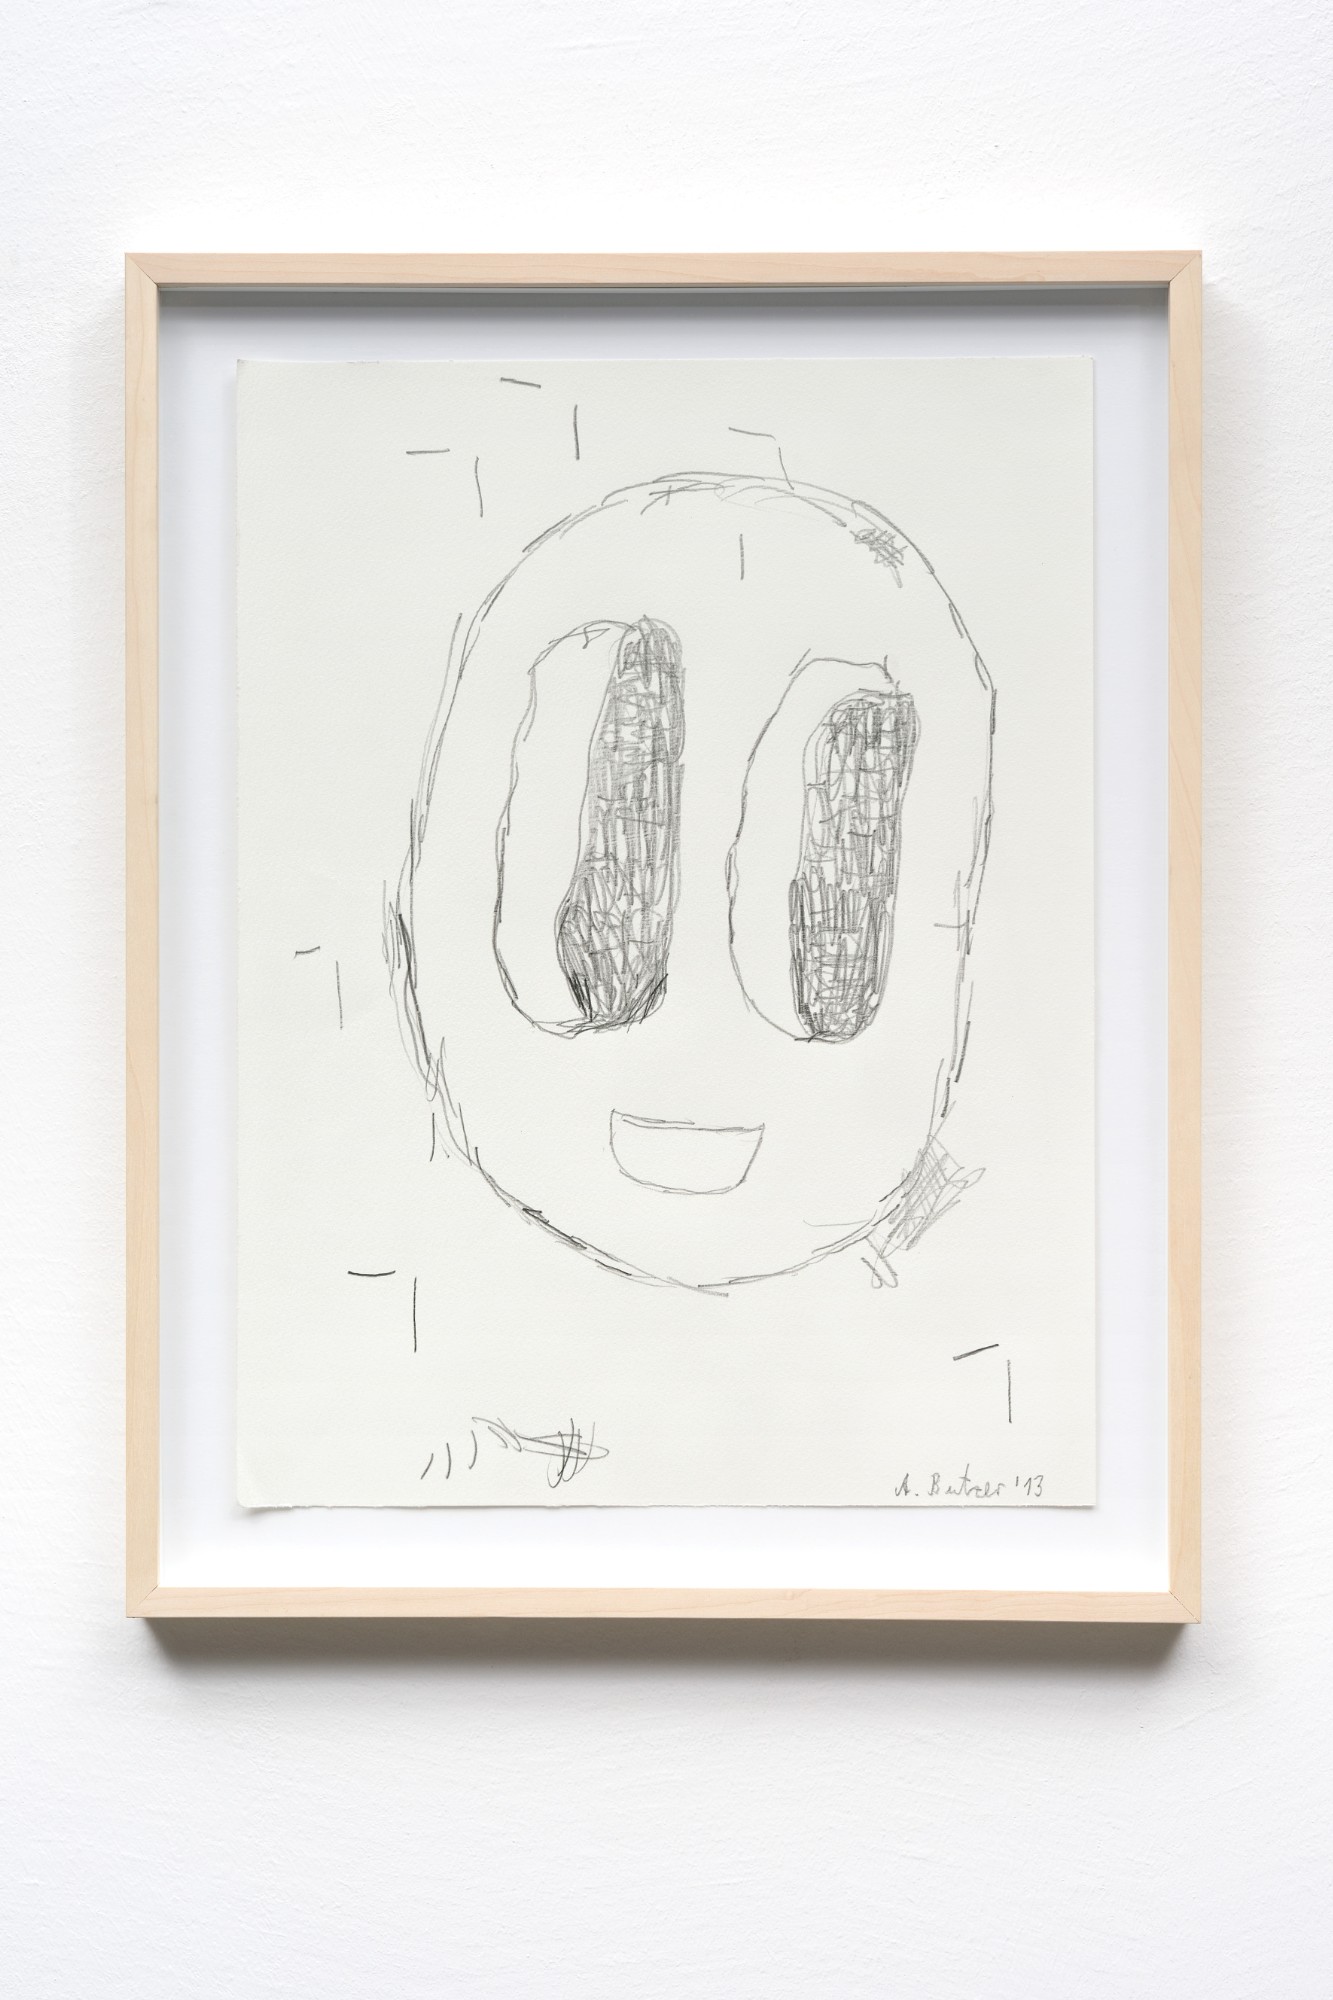 André Butzer, Untitled, 2013, pencil on paper, 48 x 36 cm